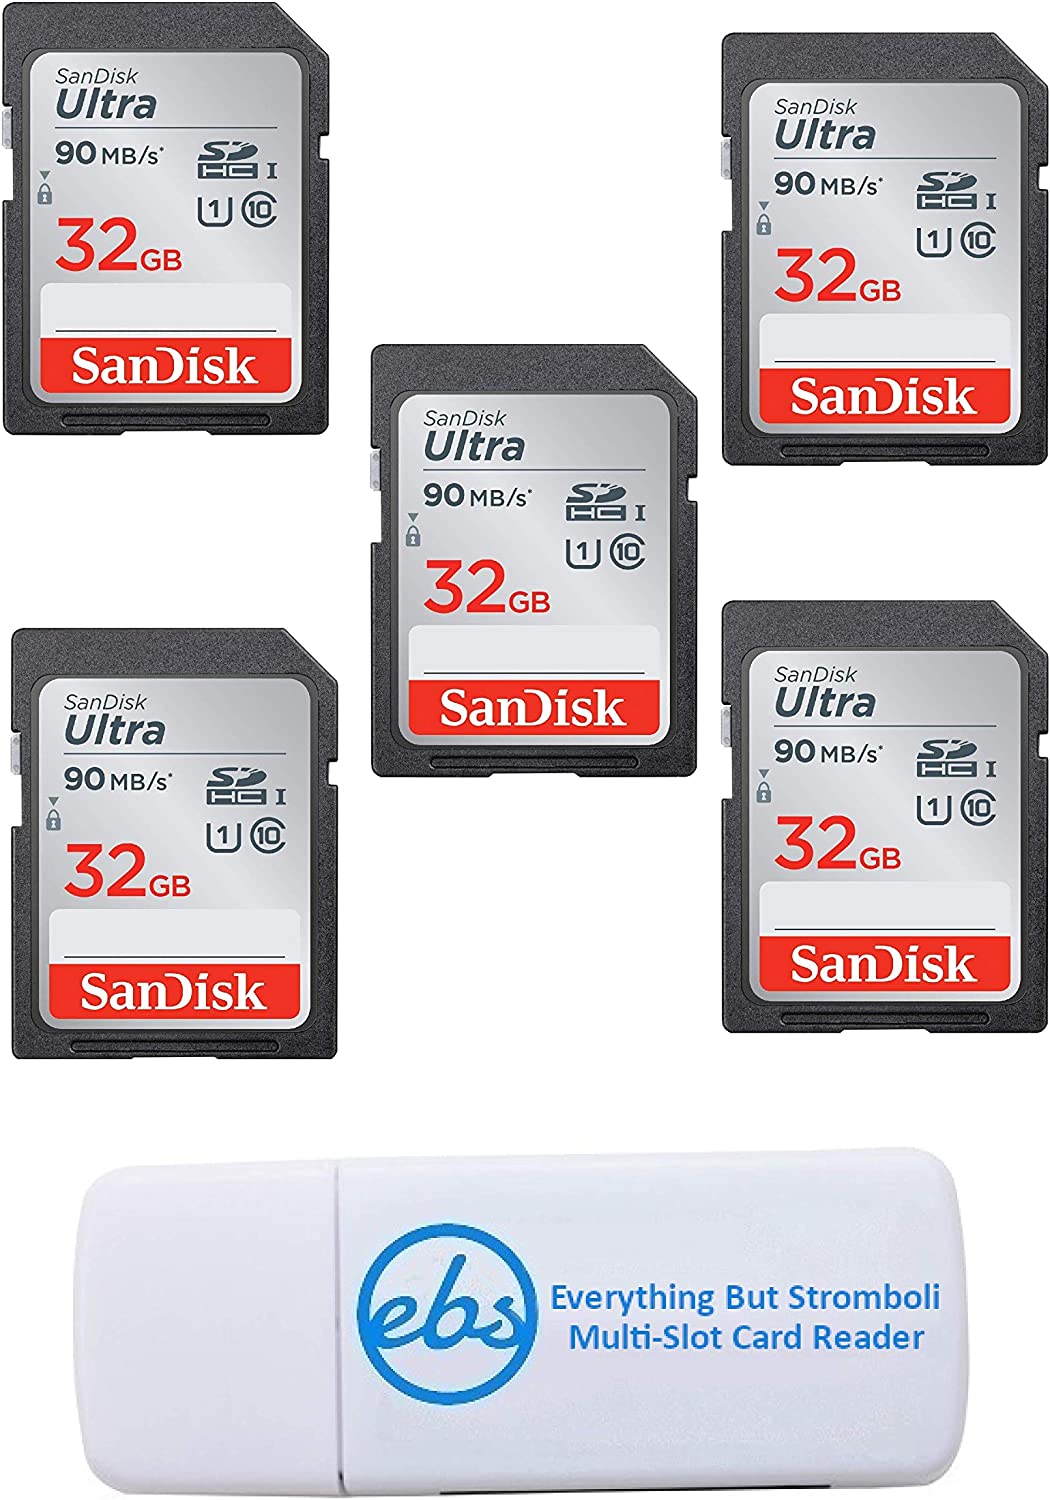 샌디스크 울트라 - 5팩 번들 UHS-I 클래스 10 SD 플래시 메모리 카드 소매 (SDSDUNC-032G-GN6)IN) - 스트롬볼리(TM) 콤보 카드 리더를 제외한 모든 것 포함